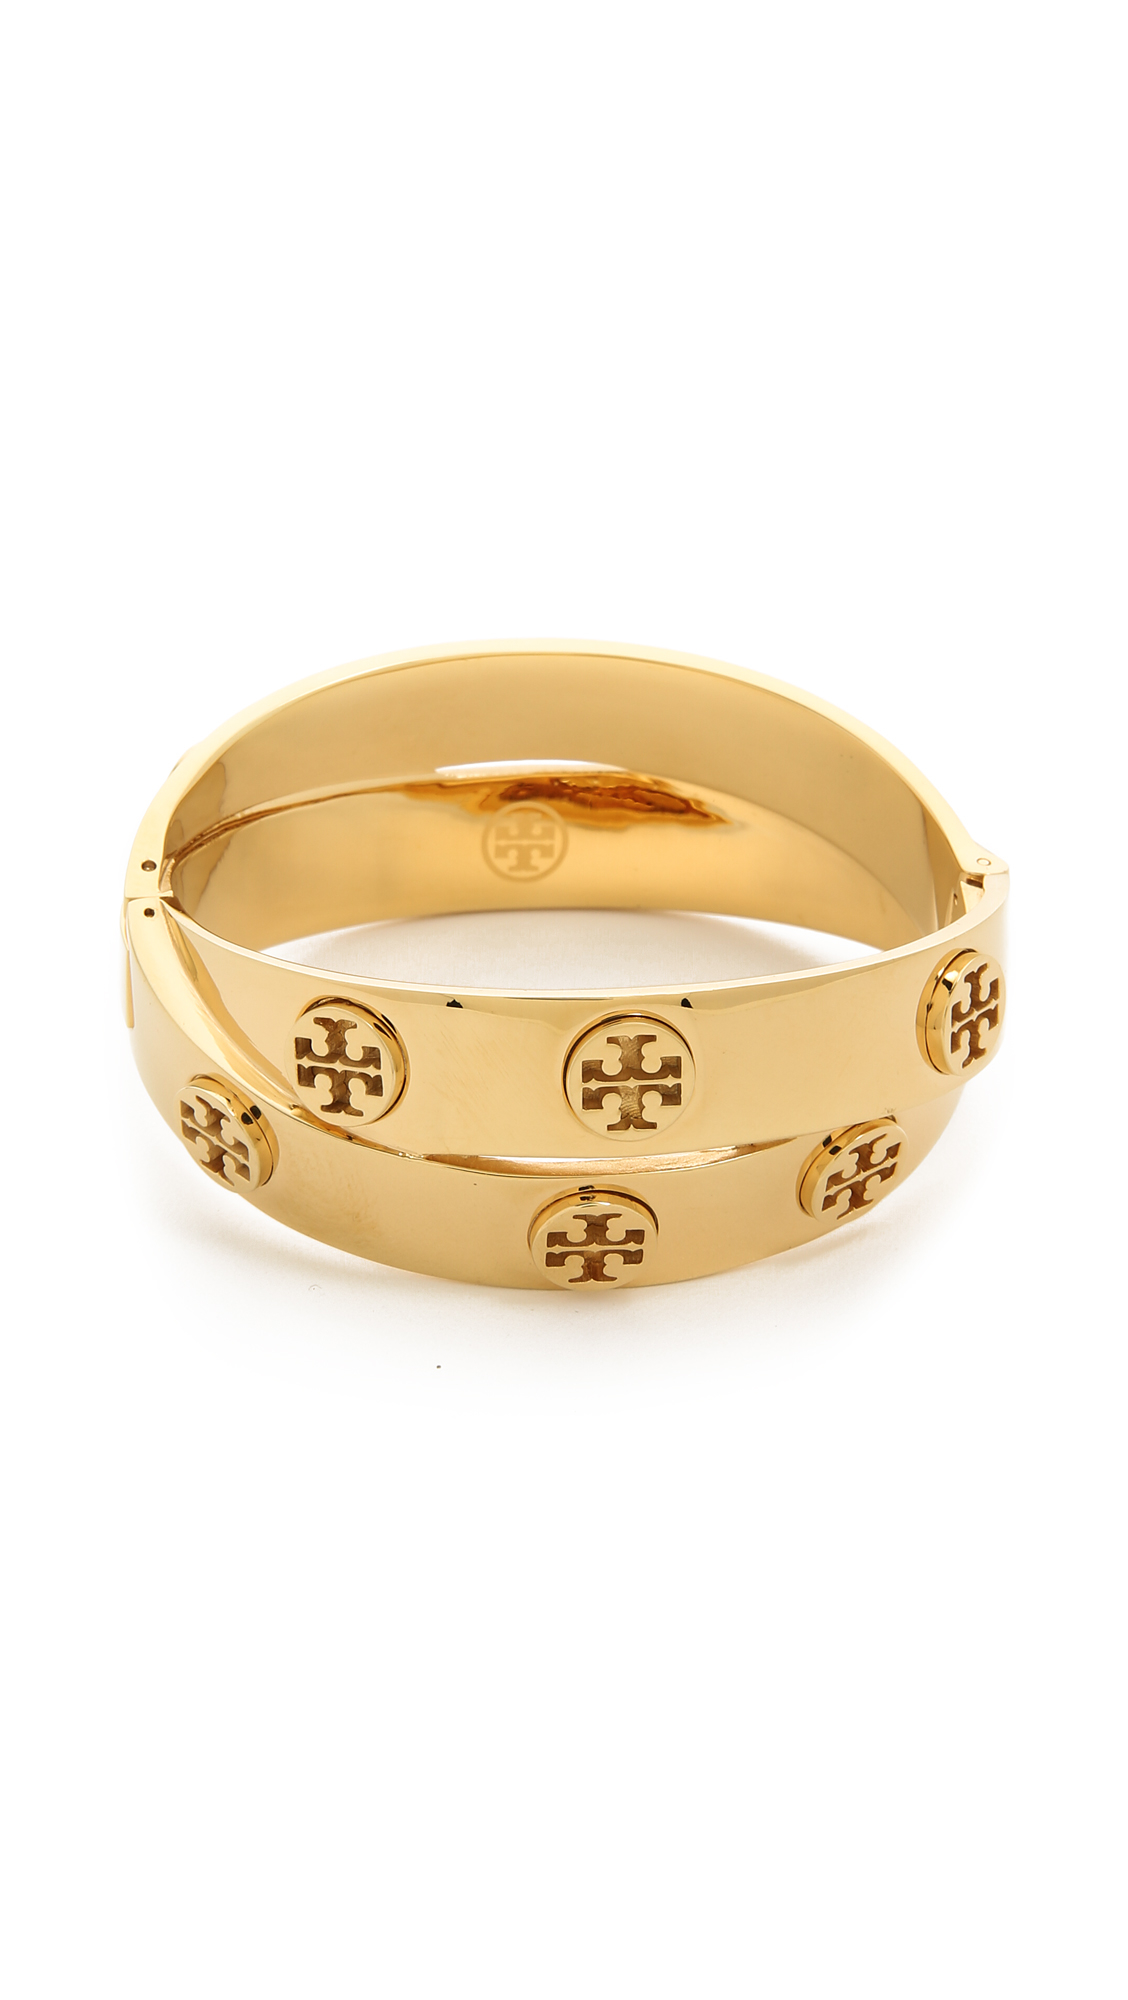 Tory Burch Metal Logo Double Wrap Bracelet in Shiny Gold (Metallic) - Lyst